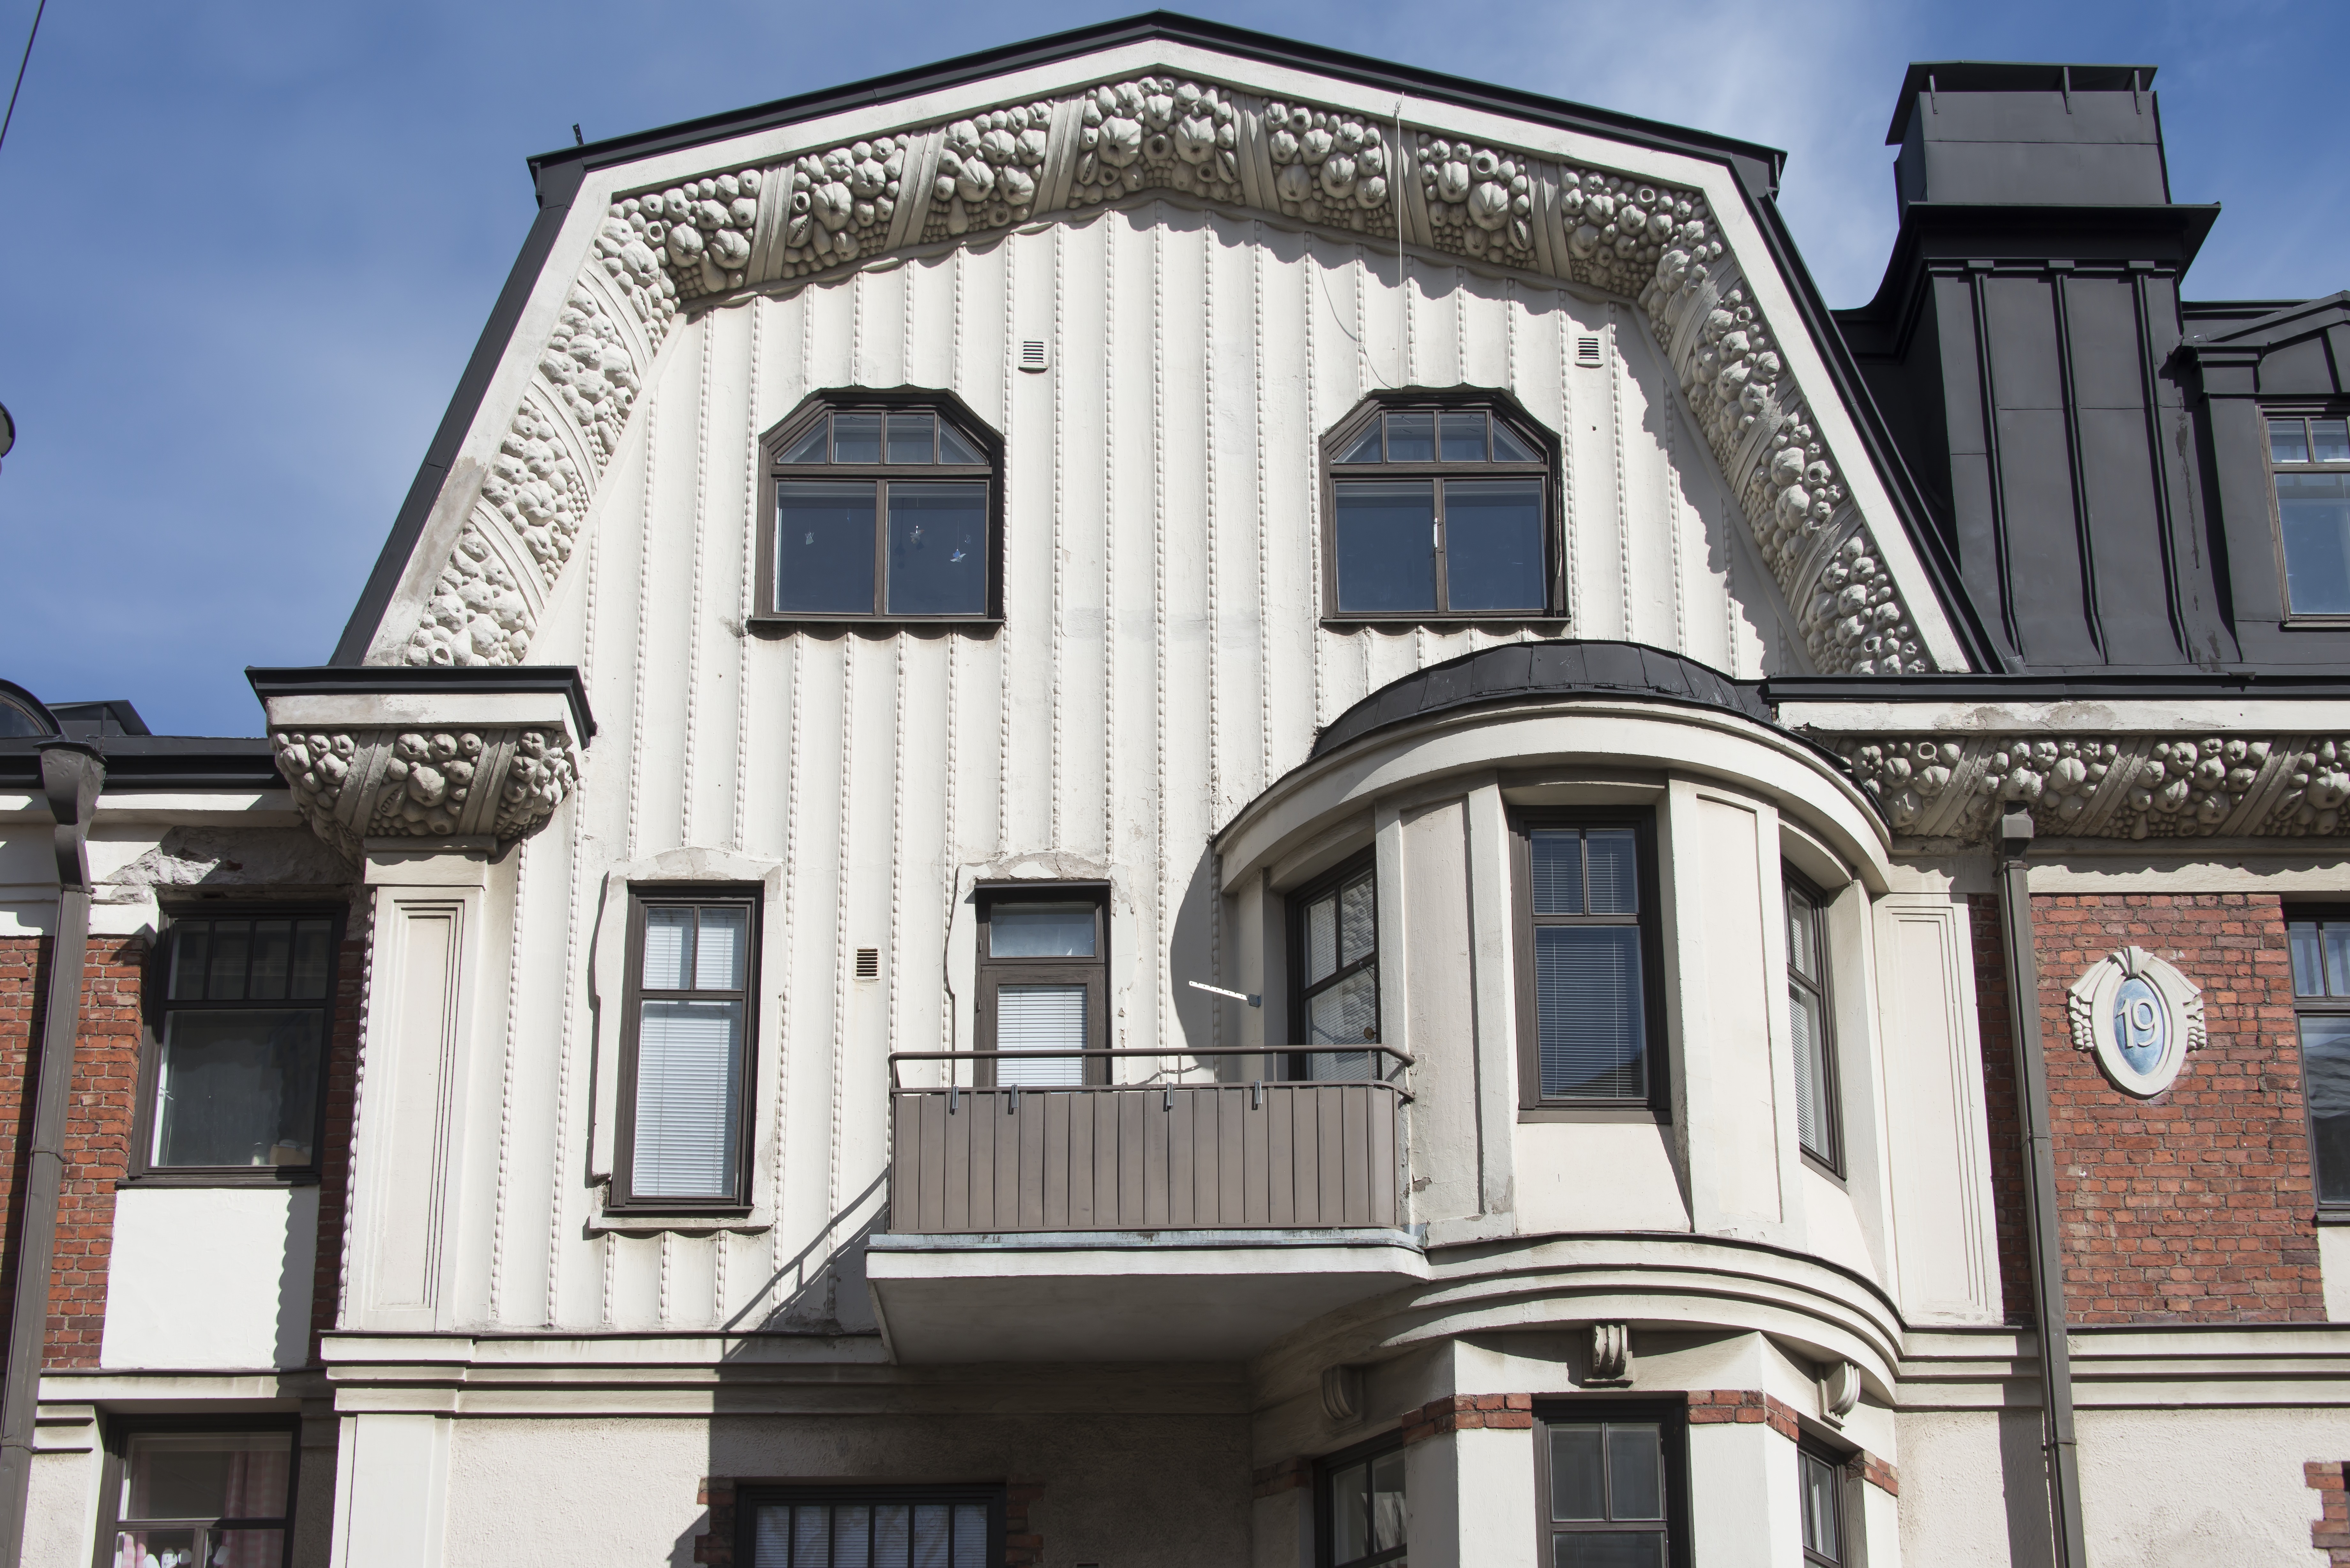 Kristianinkatu 7. Oiva Kallion 1910 suunnitelmien mukaan toteutettu 1880-luvun alussa rakennetun matalan kivitalon laajentaminen ja muodistaminen. Julkisivun yksityiskohtia.